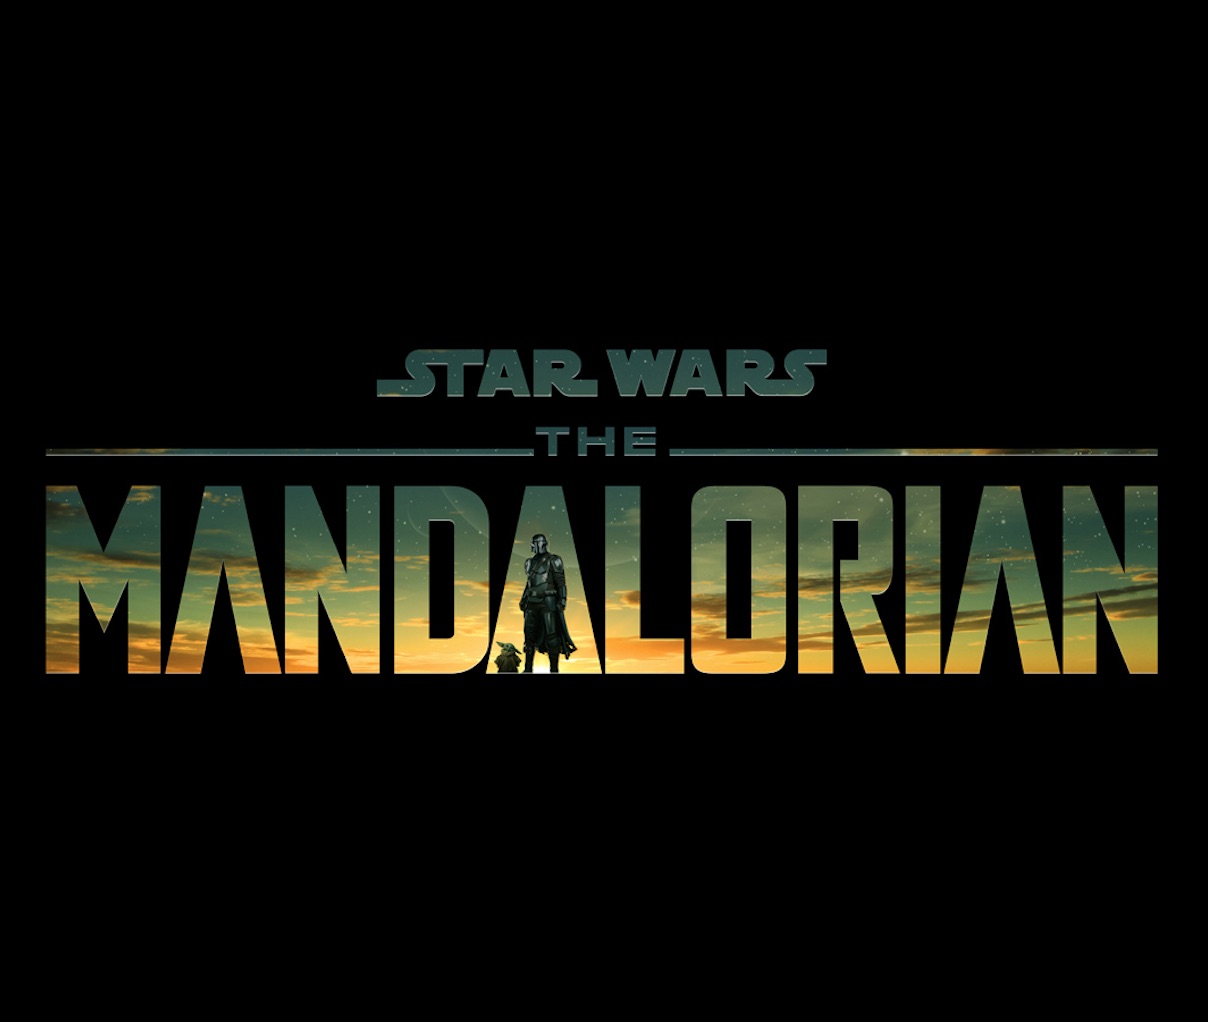 The Mandalorian title art.